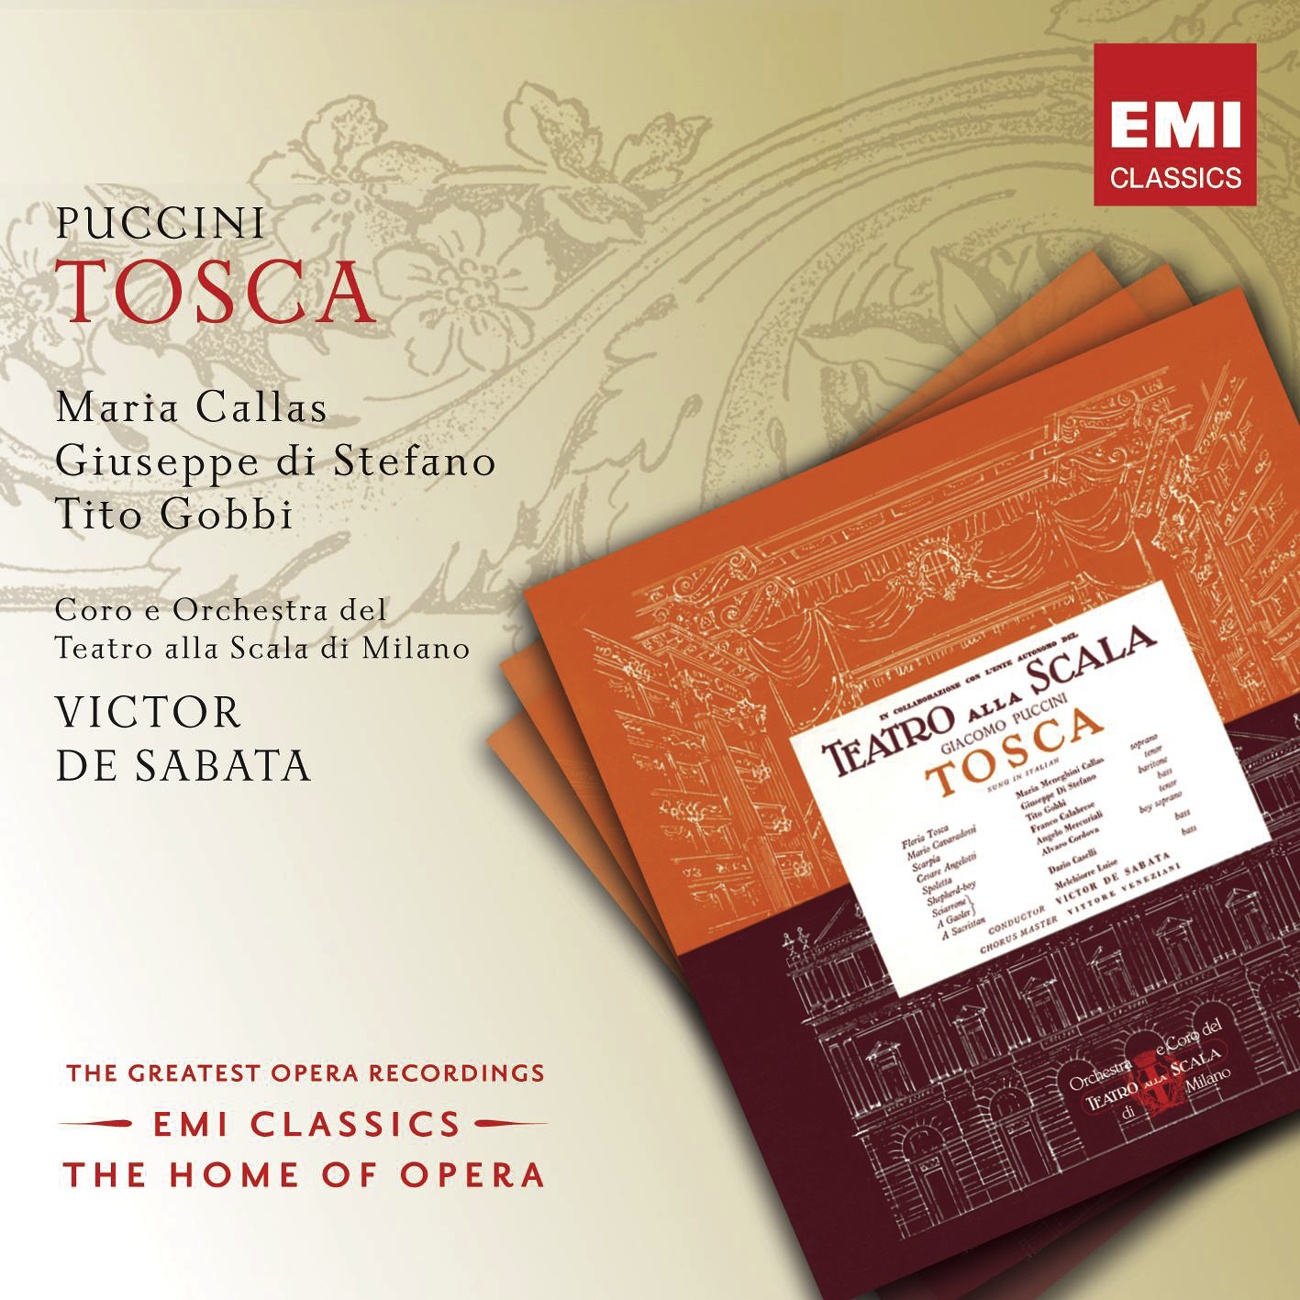 Tosca (2002 Digital Remaster), ACT ONE: Tosca? Che non mi veda (Scarpia/Tosca/Sagrestano)